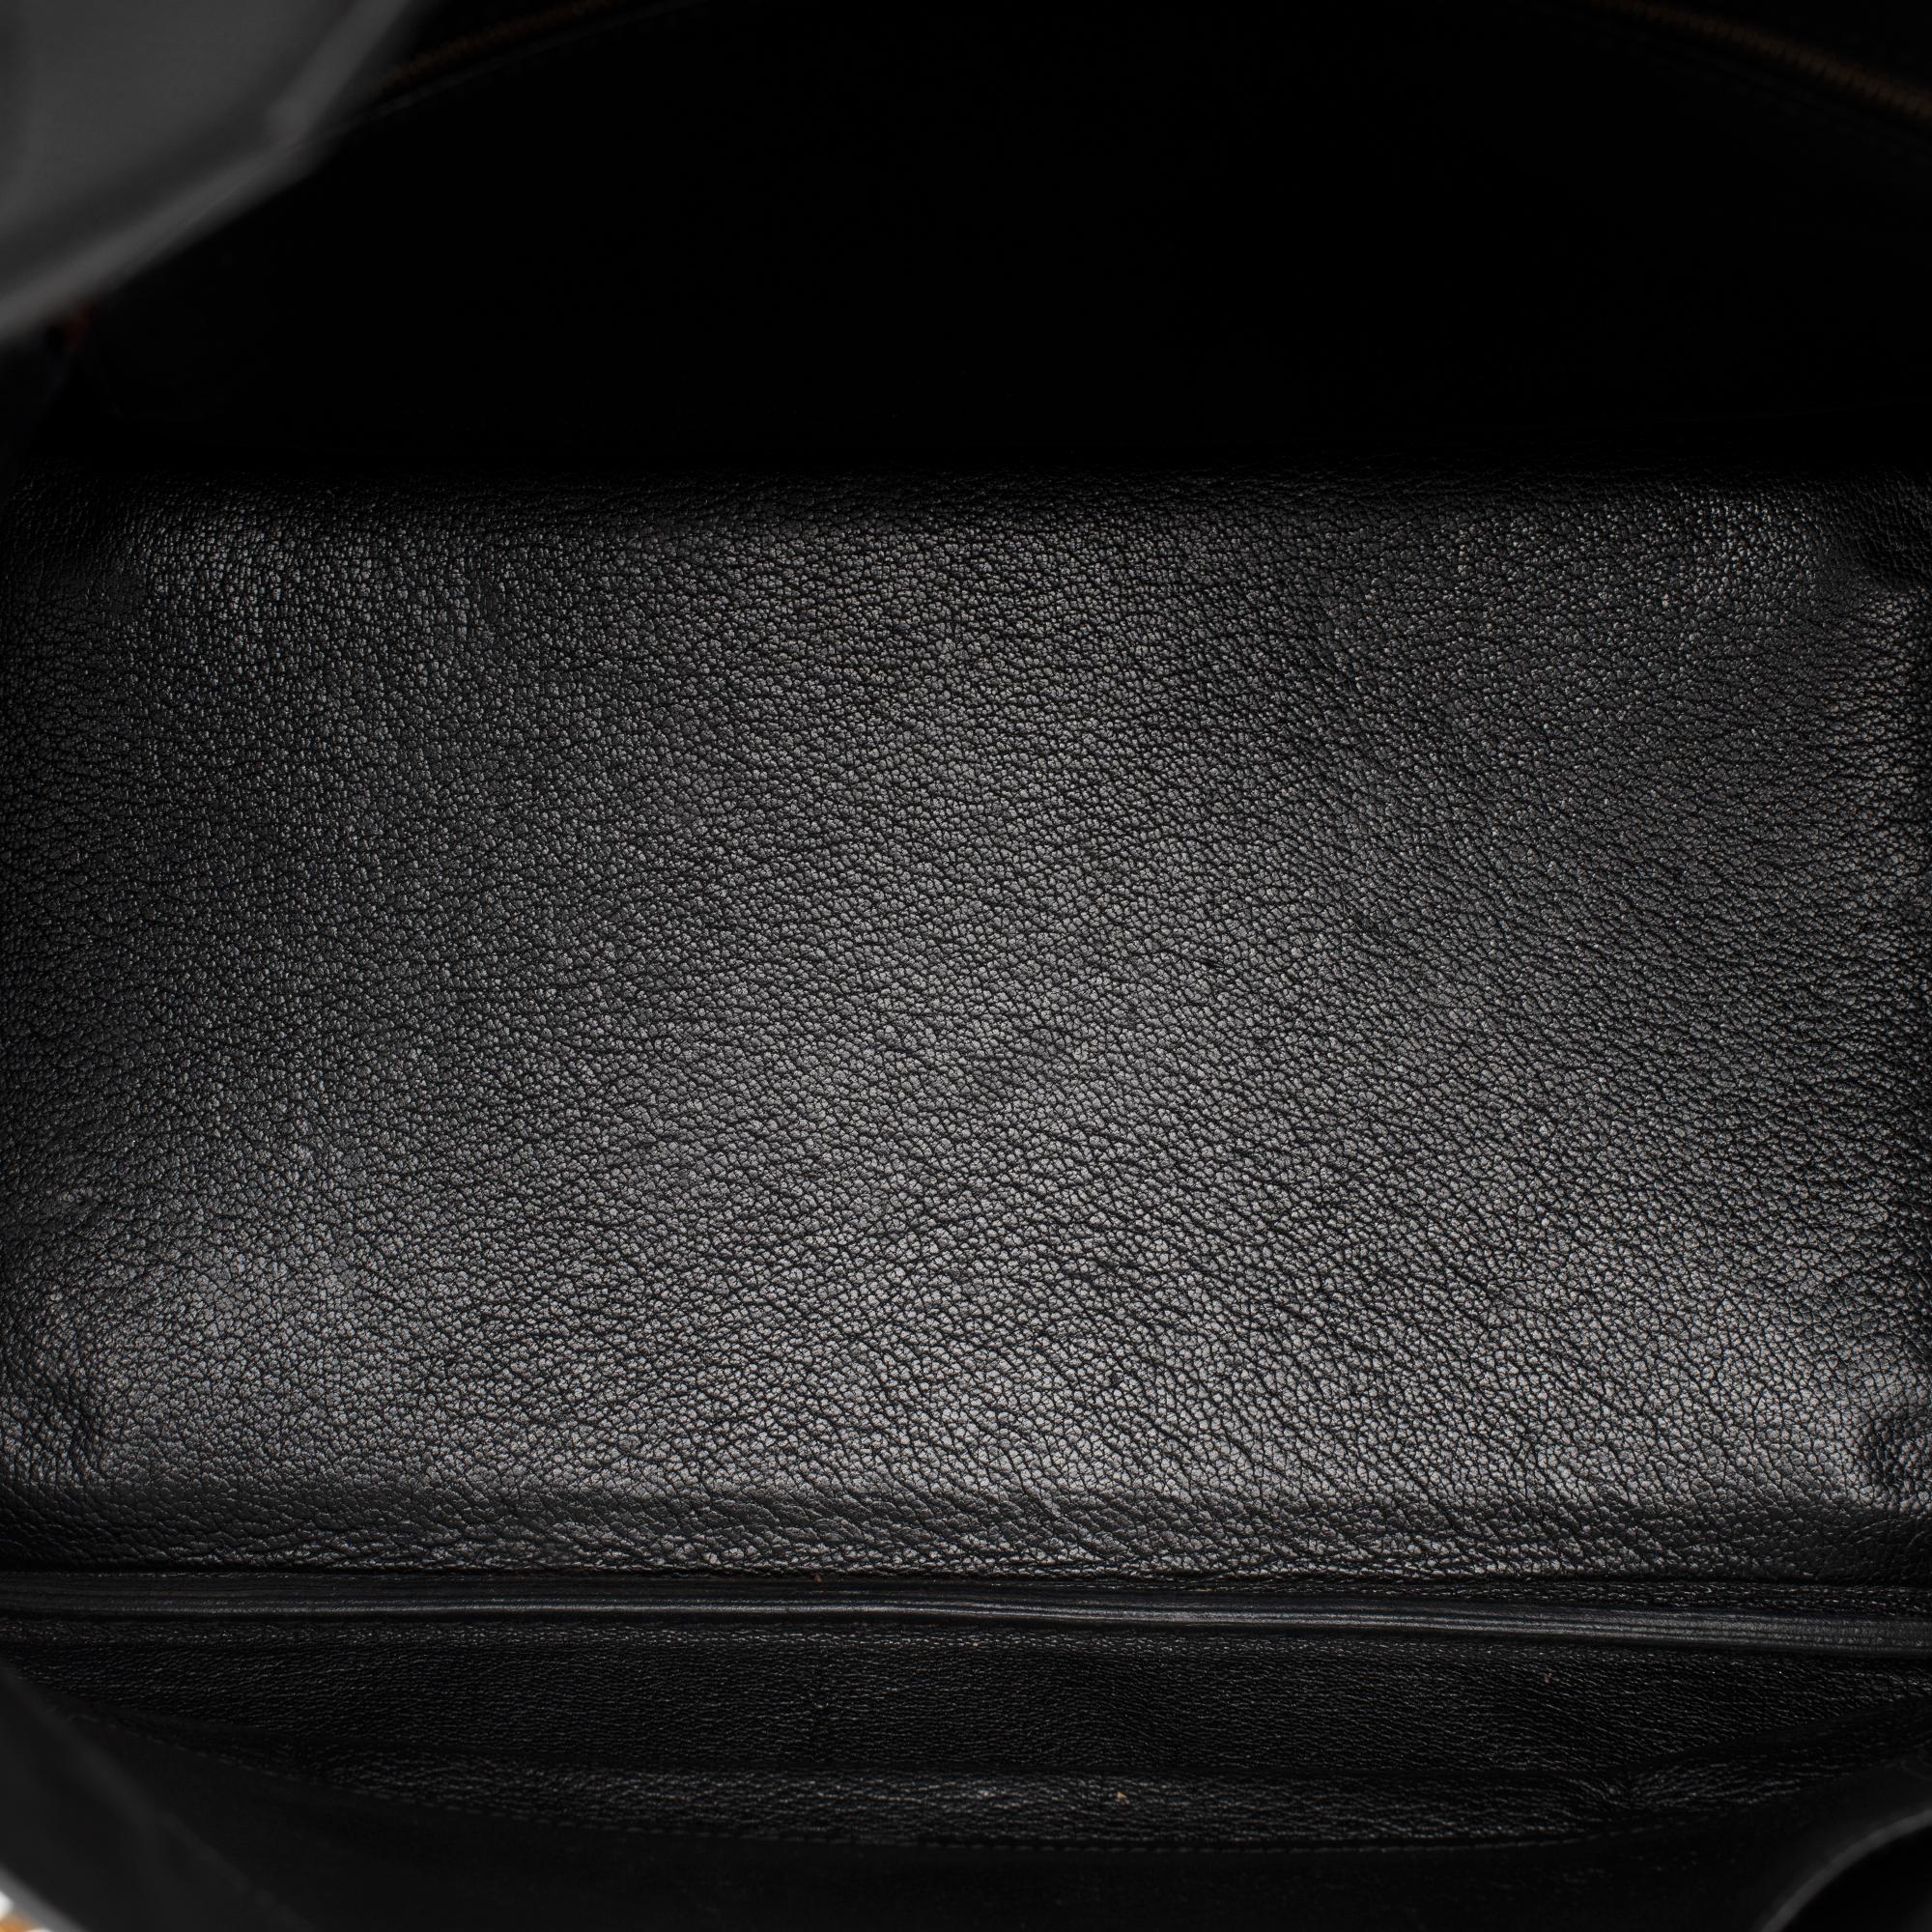 Hermès Birkin 35 handbag in black Courchevel leather, Gold hardware 2